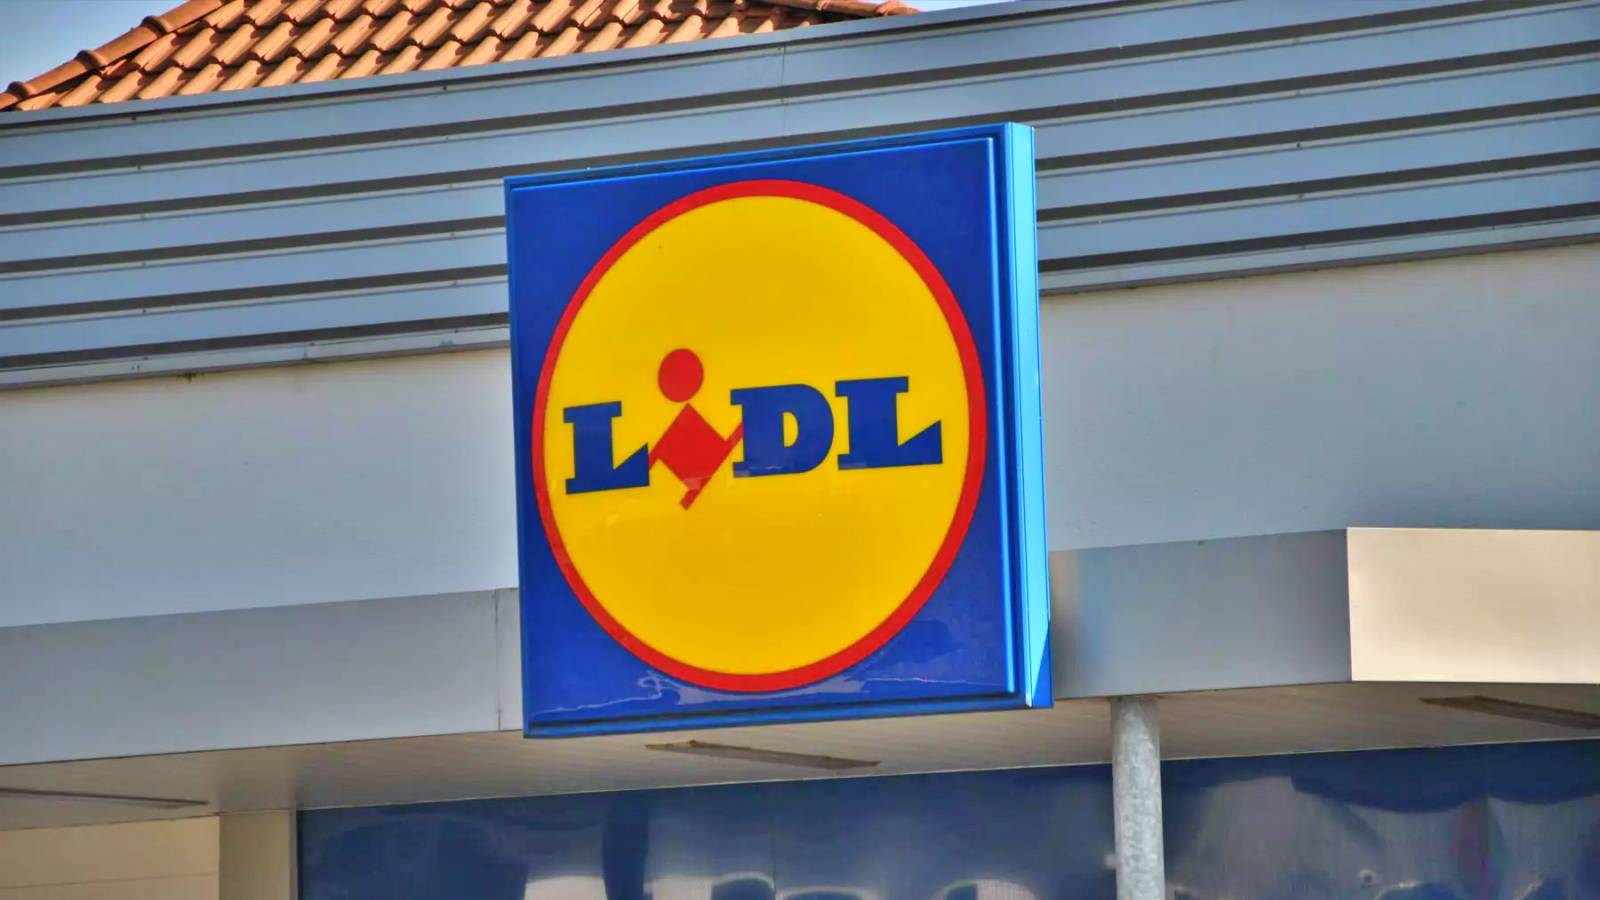 LIDL Rumunia Podjęła decyzję o sklepach Wiadomości ogłoszone klientom